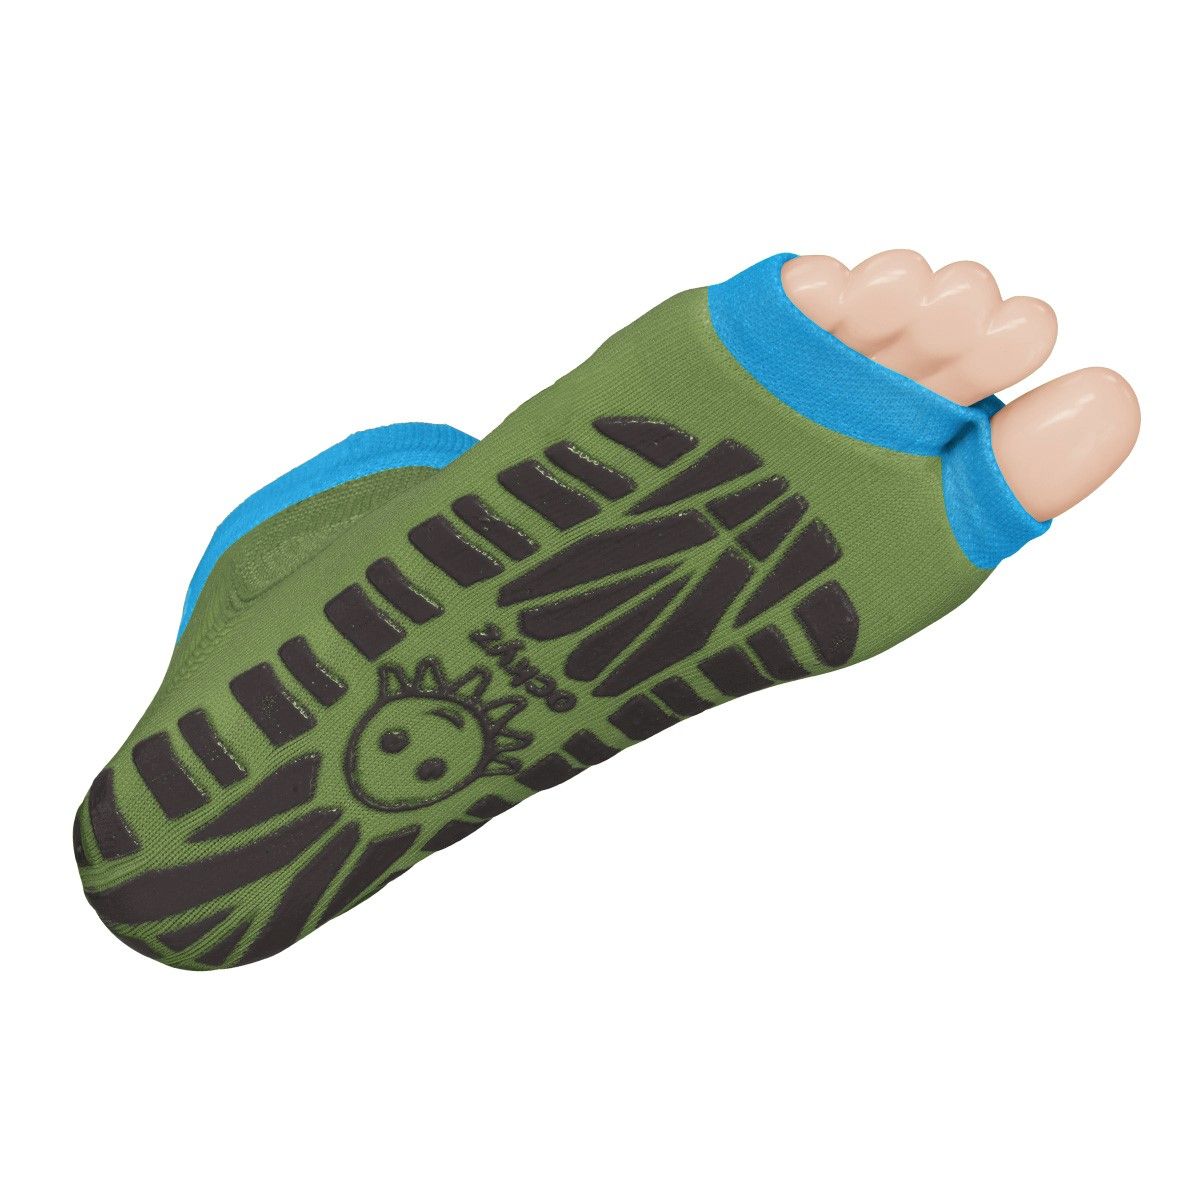 Sweakers Anti-Rutsch-Schwimm-Socken, grün, Größe 27-30